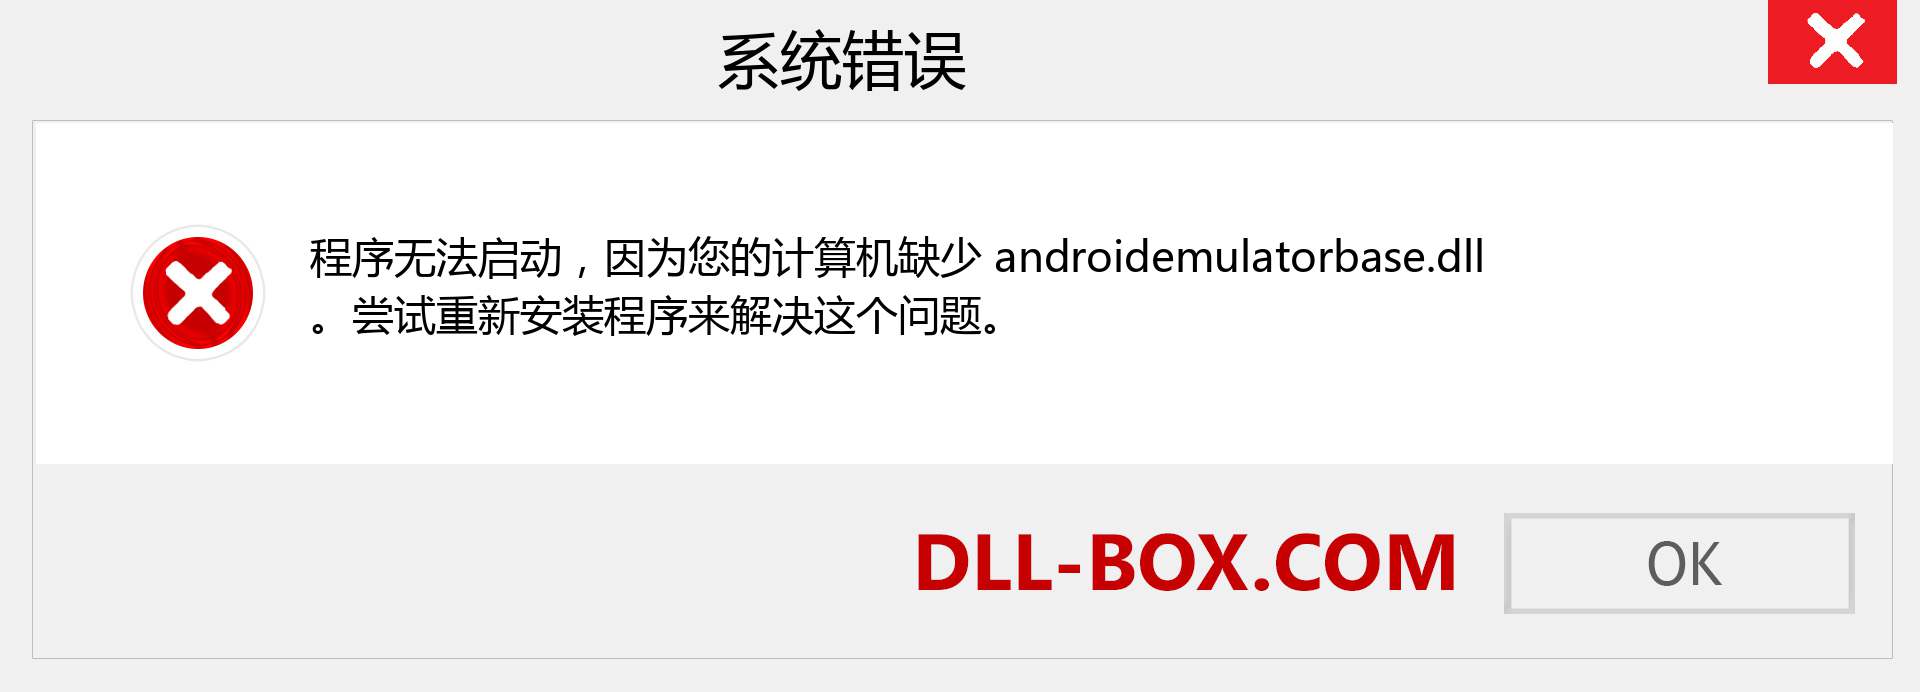 androidemulatorbase.dll 文件丢失？。 适用于 Windows 7、8、10 的下载 - 修复 Windows、照片、图像上的 androidemulatorbase dll 丢失错误